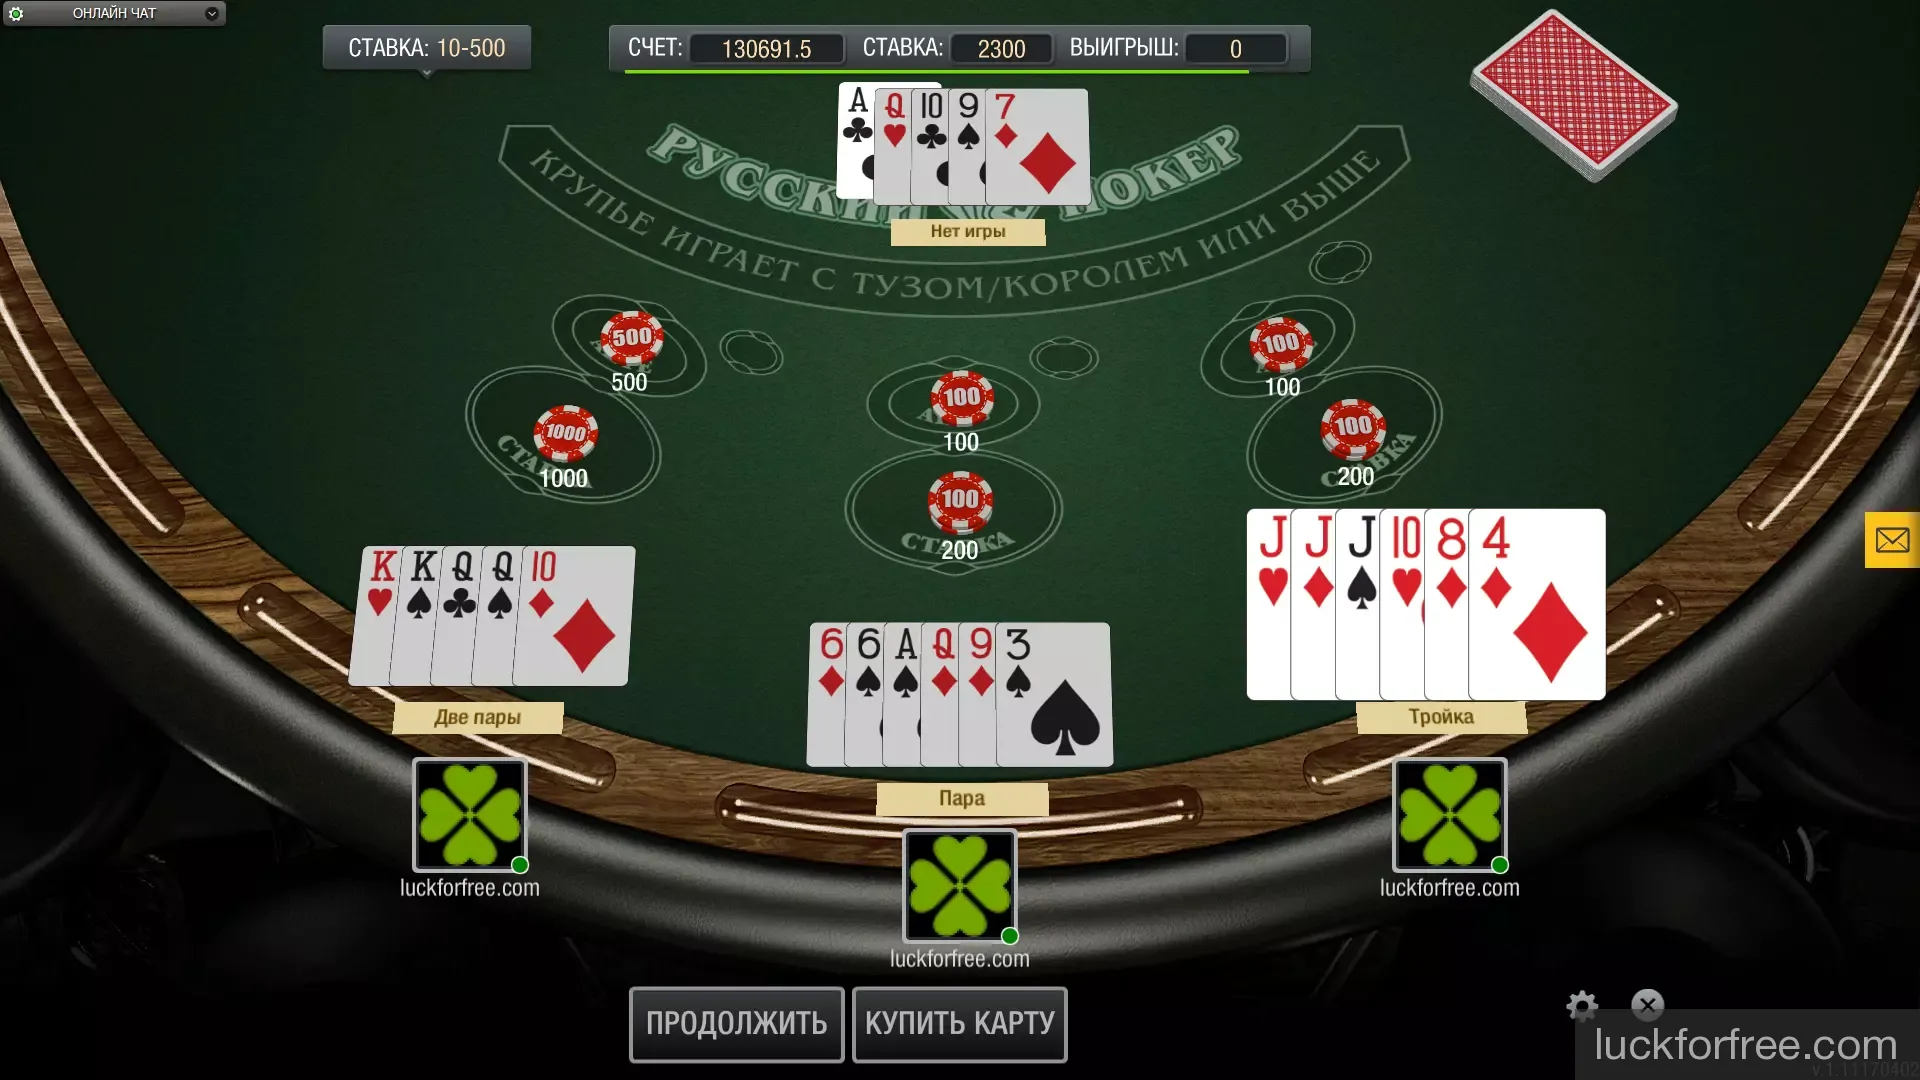 Игры онлайн играть бесплатно покер без регистрации бесплатно как поднять в казино денег на самп рп